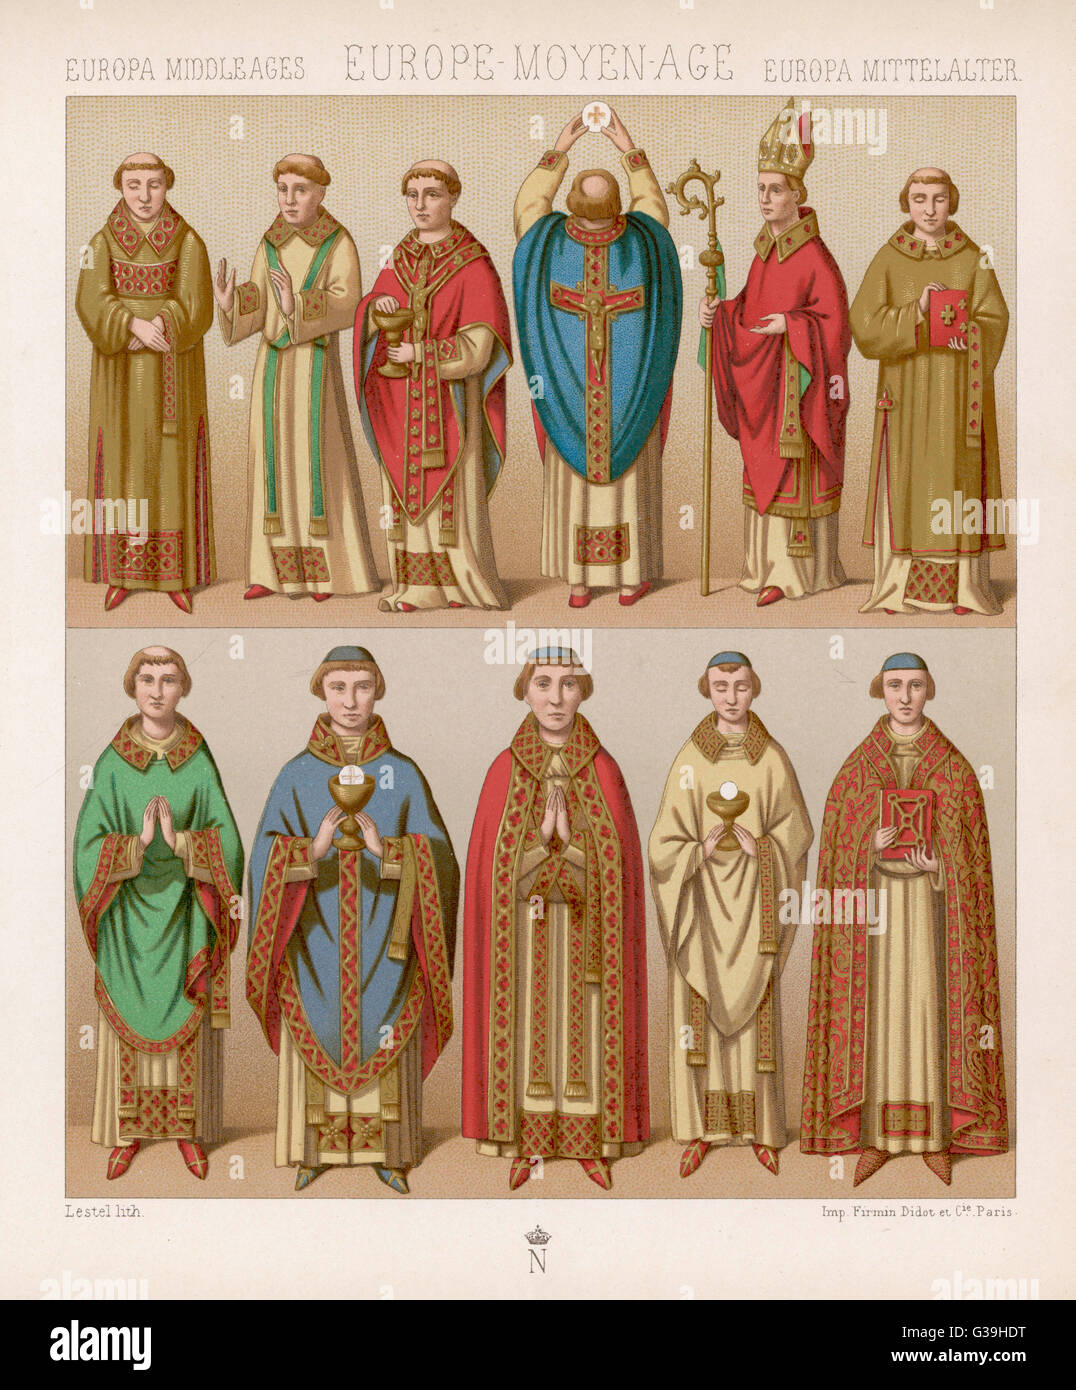 Clerigos medievales fotografías e imágenes de alta resolución - Alamy